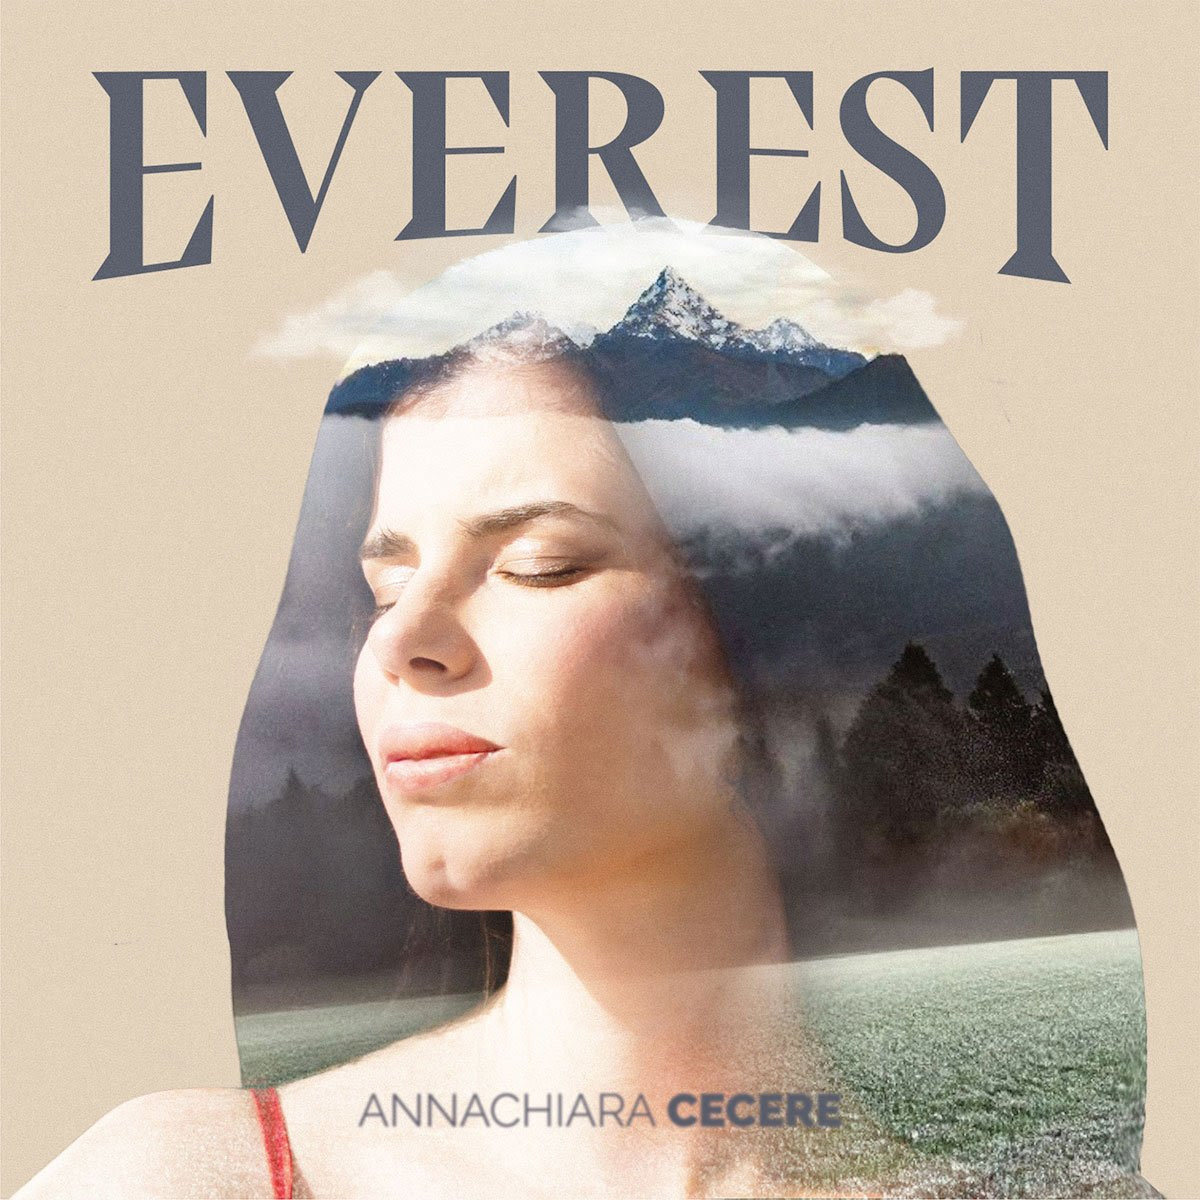 ANNACHIARA CECERE: da oggi in radio e sui digital store “EVEREST” il nuovo singolo